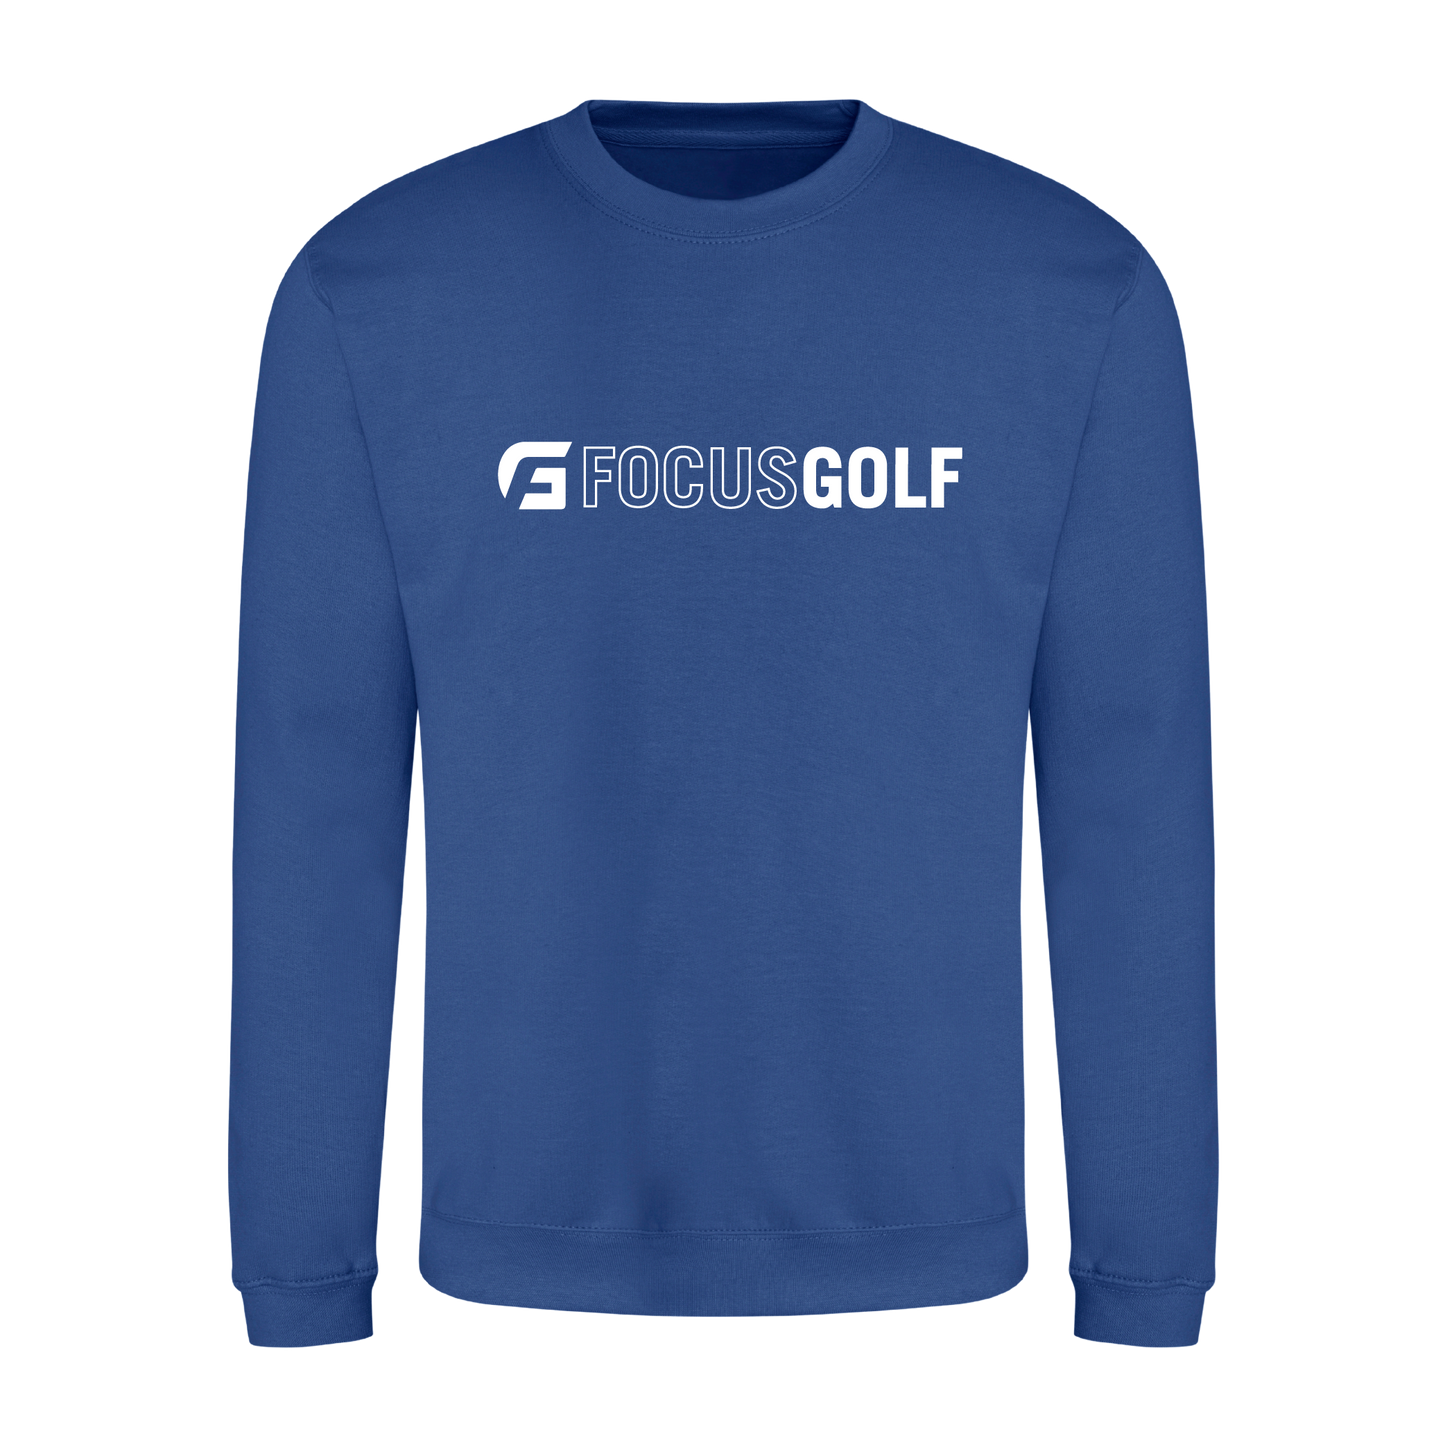 Focusgolf Approach Men's Royal Blue Sweatshirt